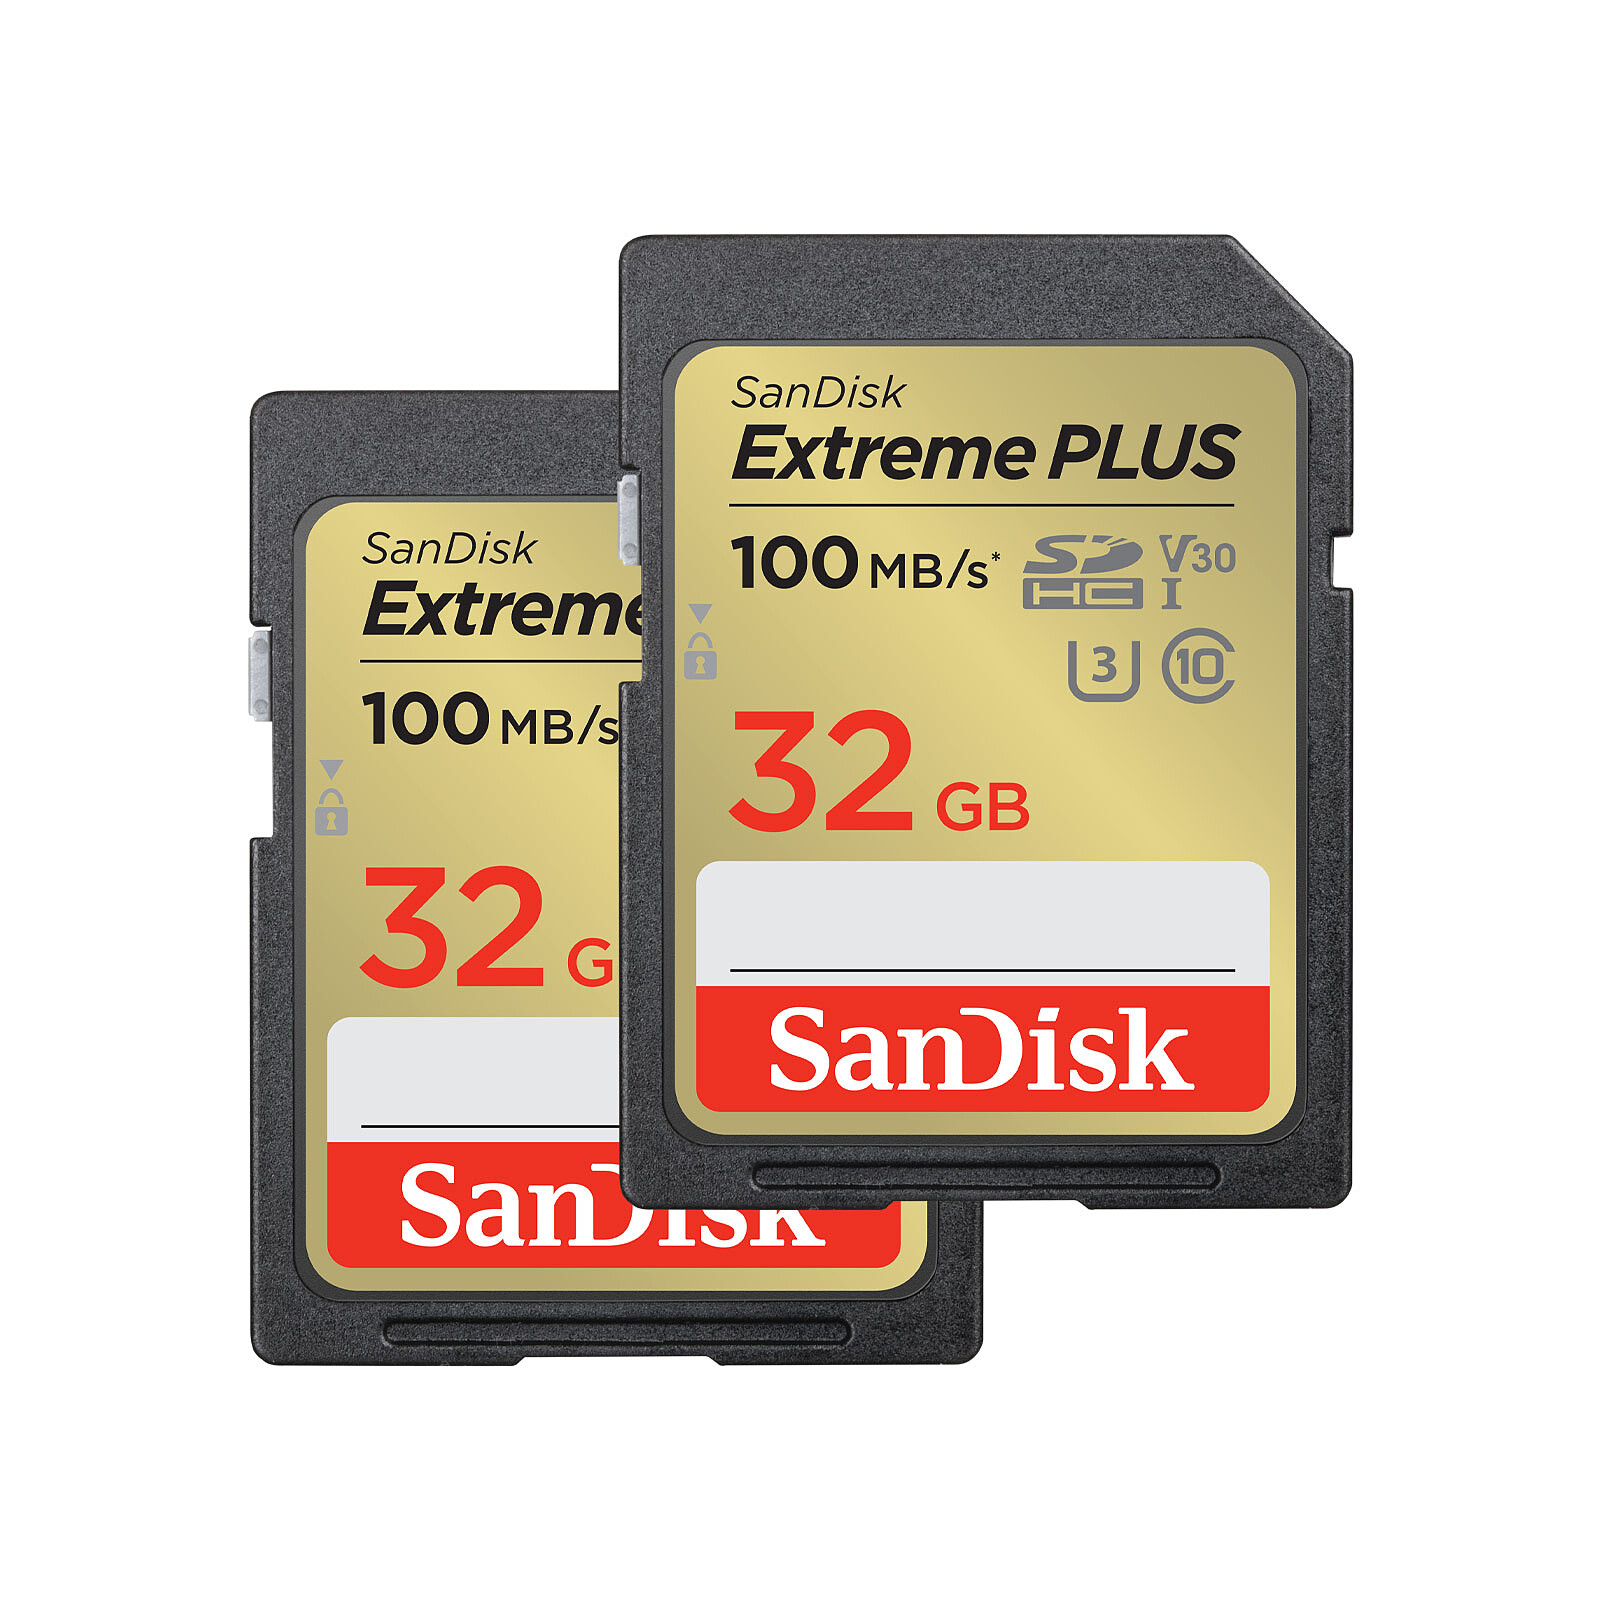 SanDisk Extreme SDHC UHS-I 32 Go (x2) - Carte mémoire Sandisk sur